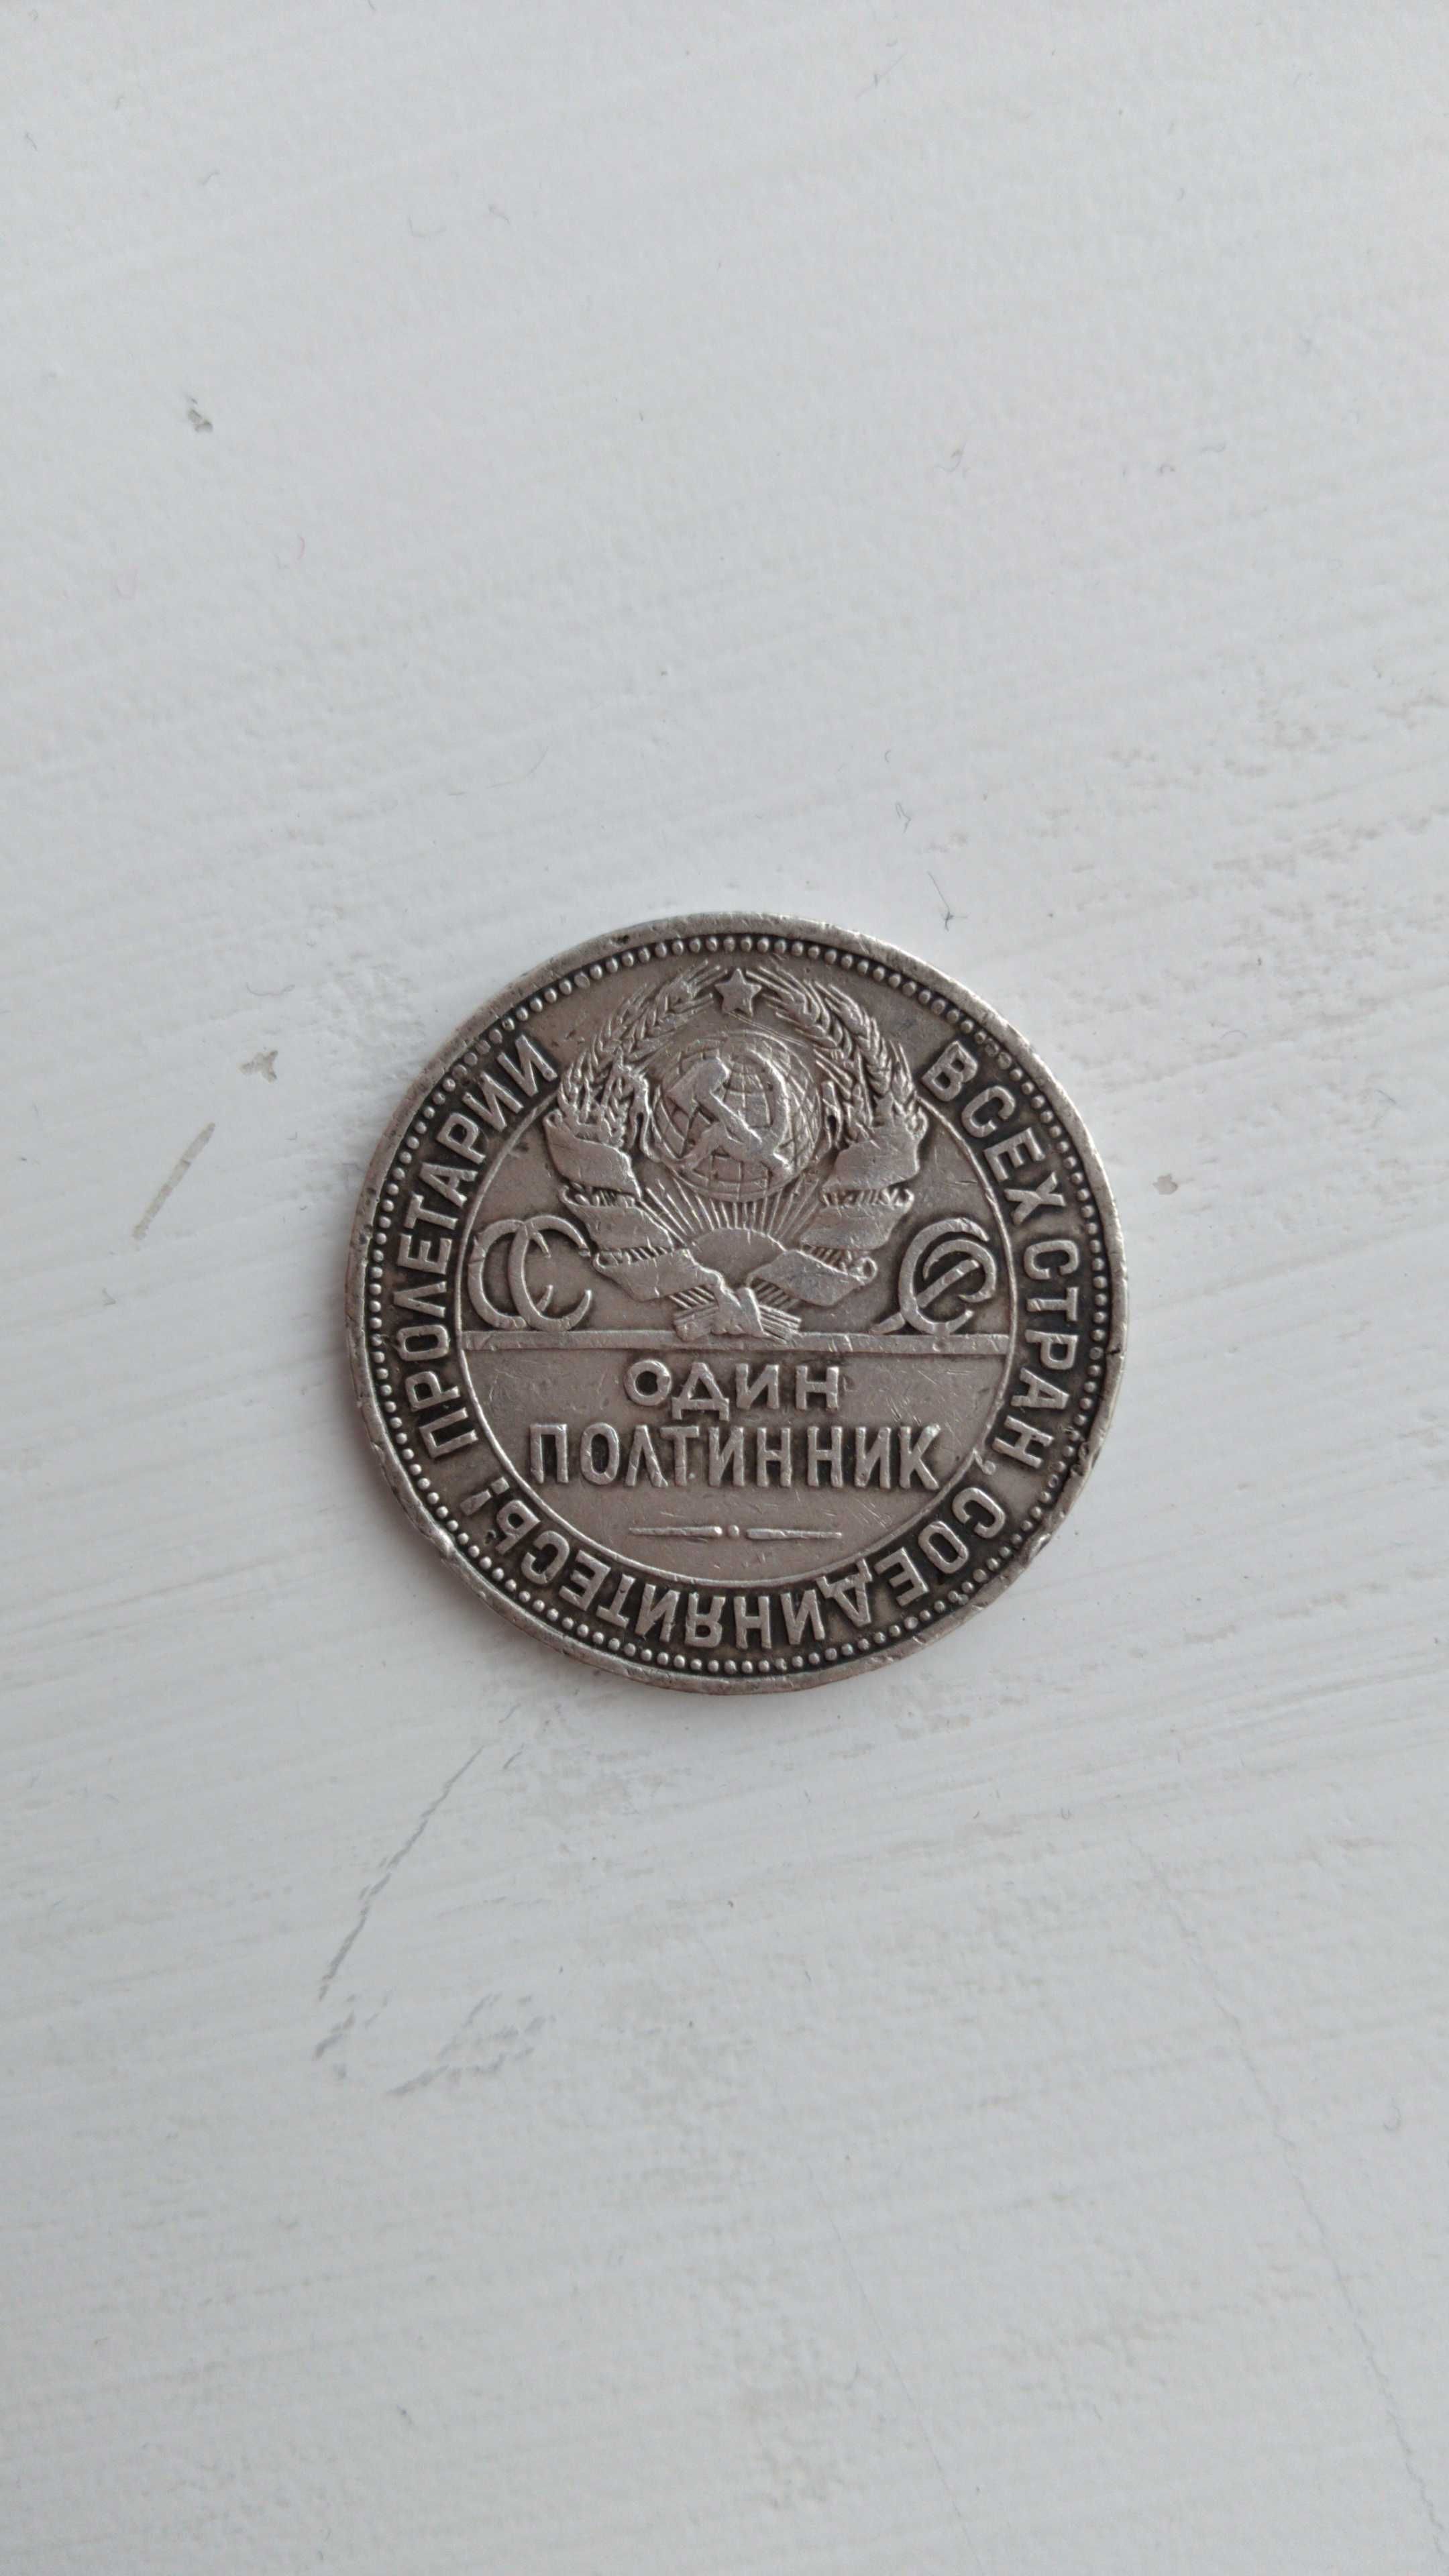 Полтинник серебряный 1924 г.в. 9 грамм чистого серебра.